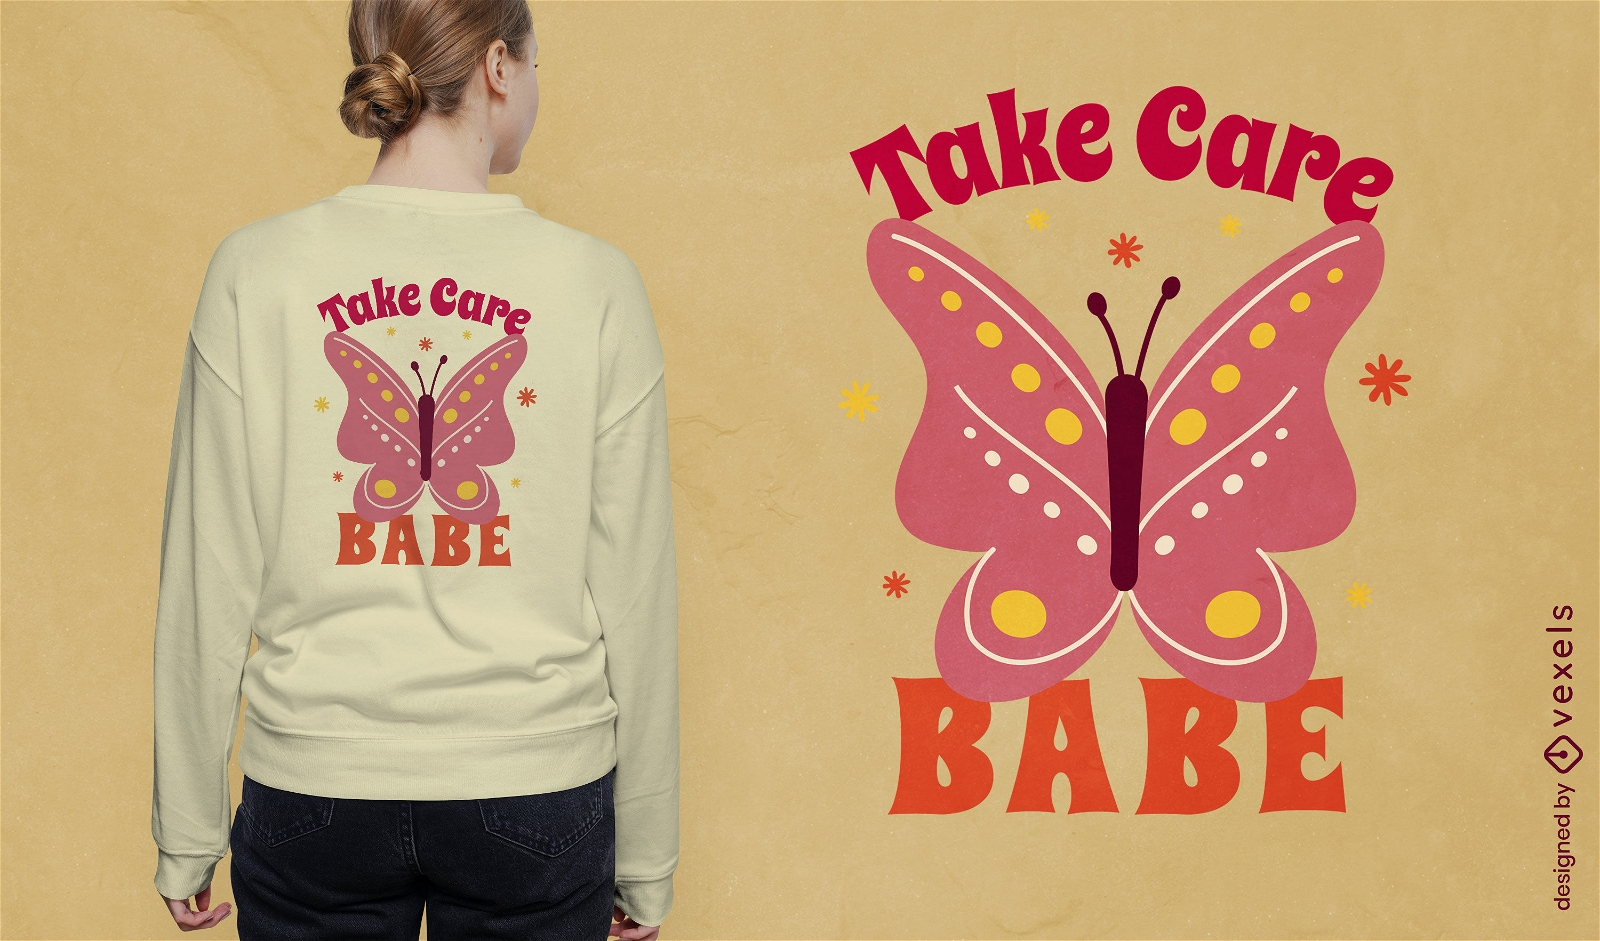 Pass auf dich auf, Baby-Schmetterlings-Zitat-T-Shirt-Design